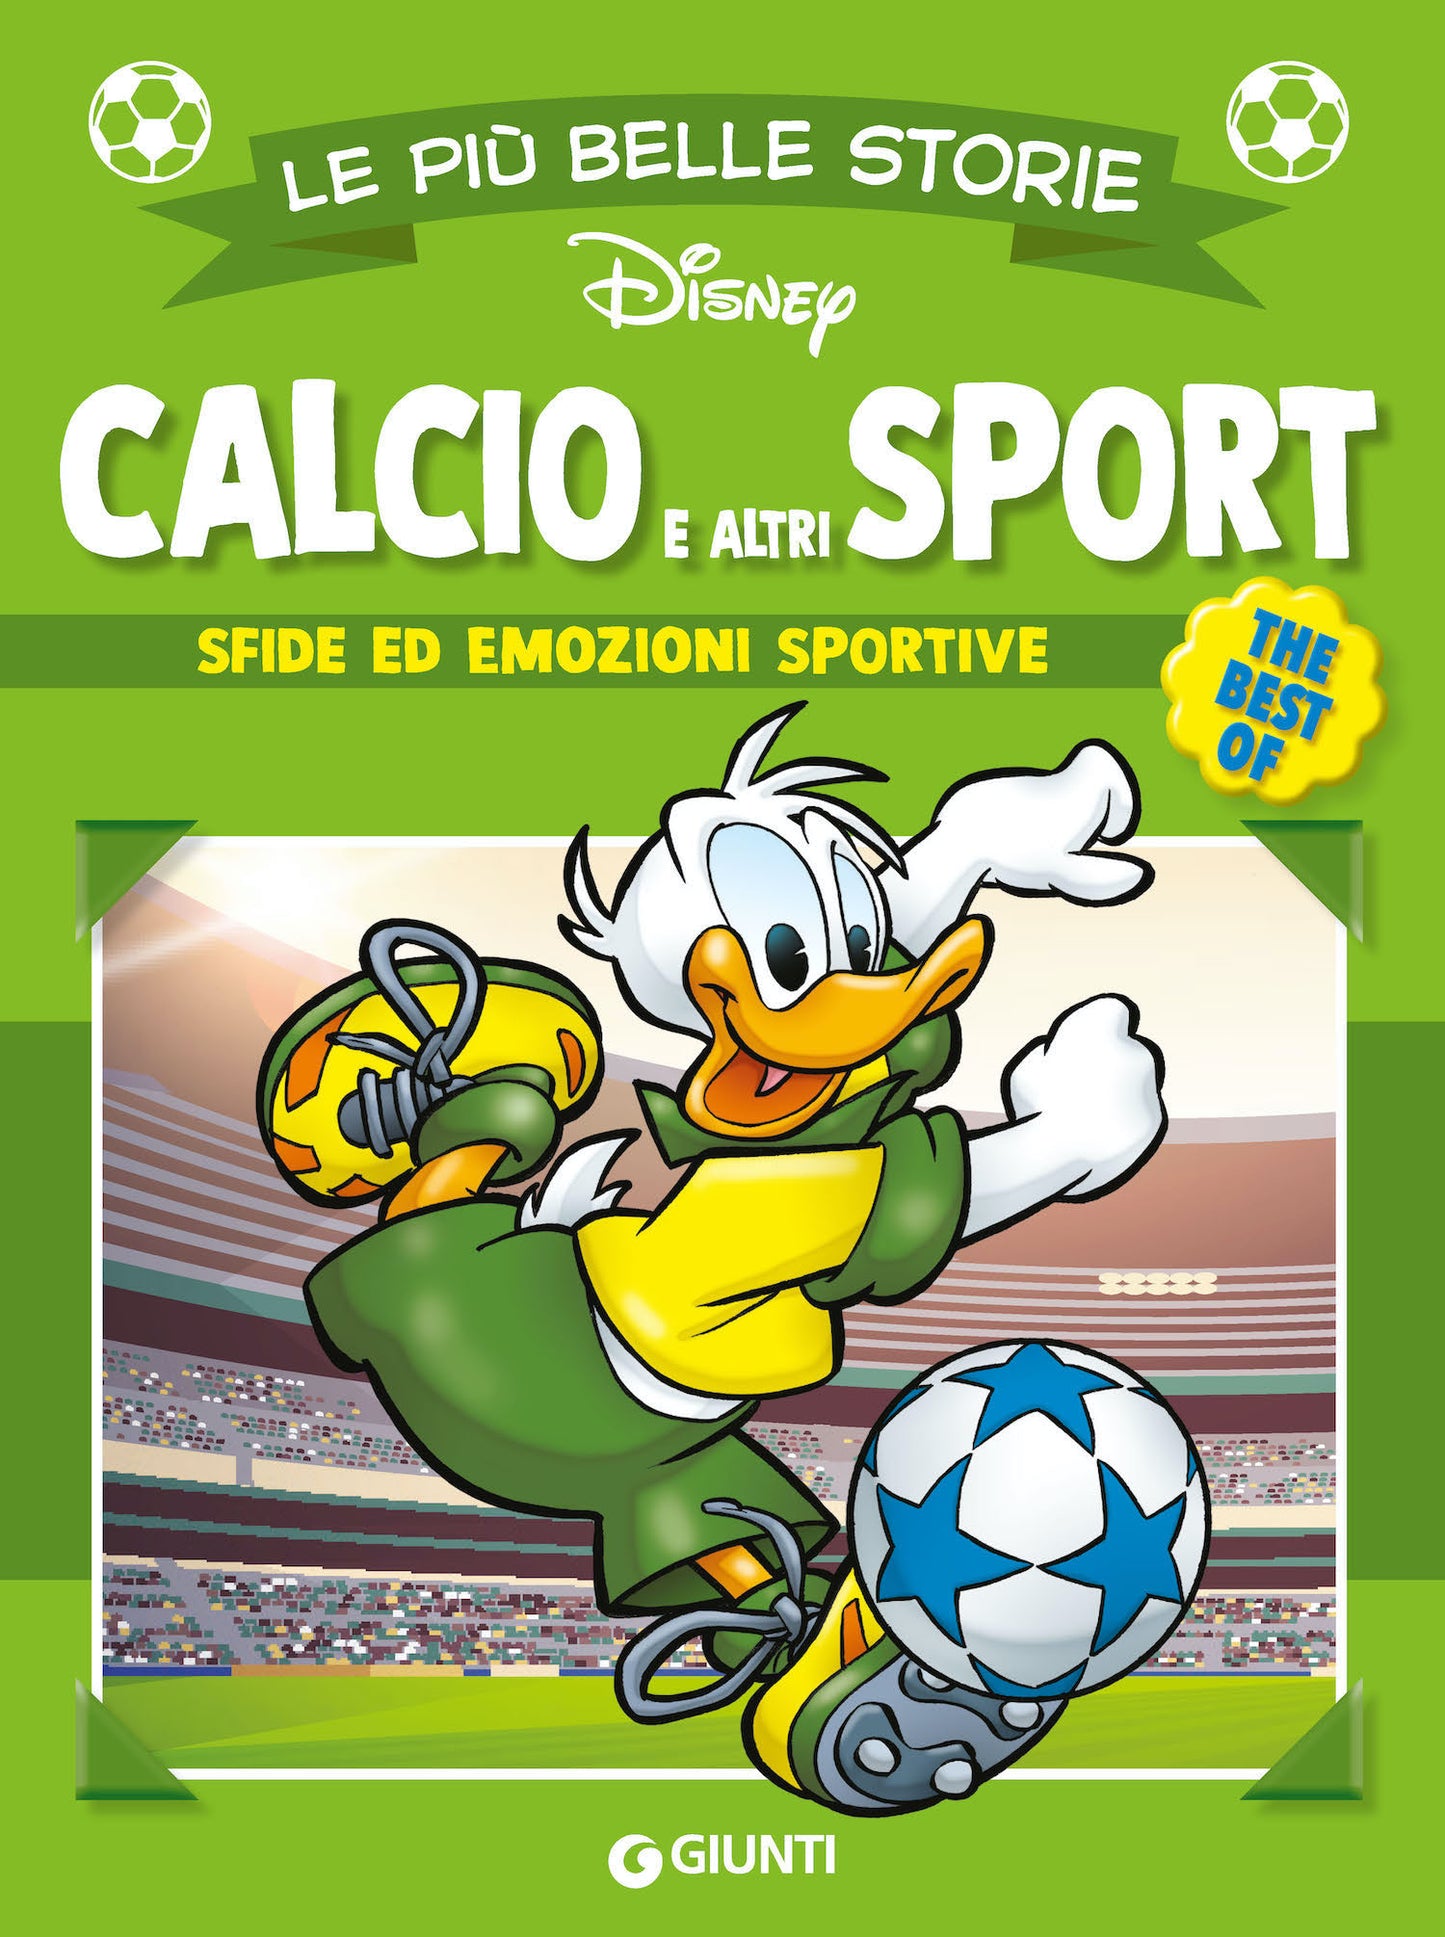 Calcio e altri sport Le più belle storie Disney The best of::Sfide ed emozioni sportive